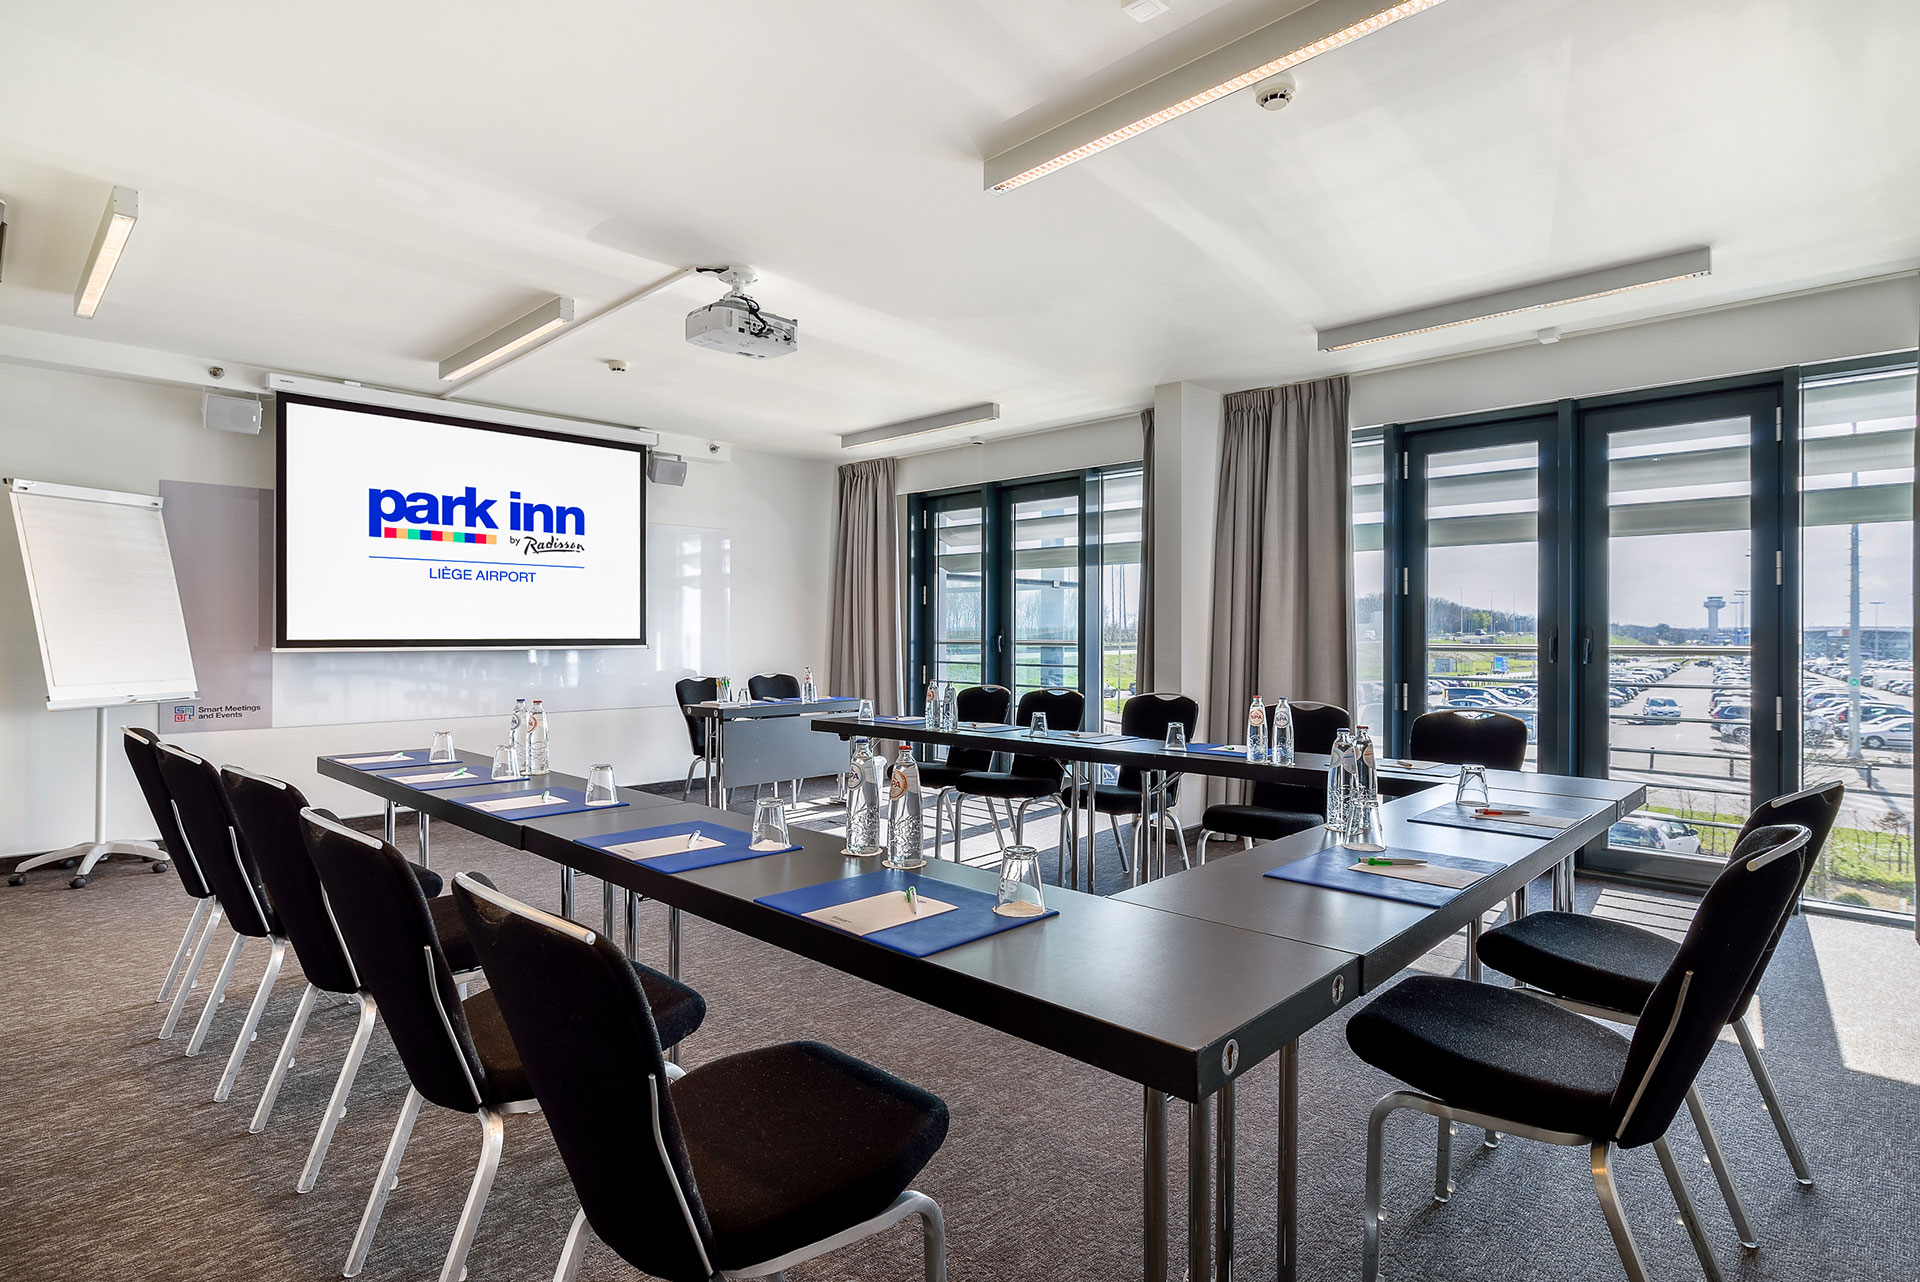 Park Inn - Liège - Airport - terminal - 100 chambres - 8 salles de réunion